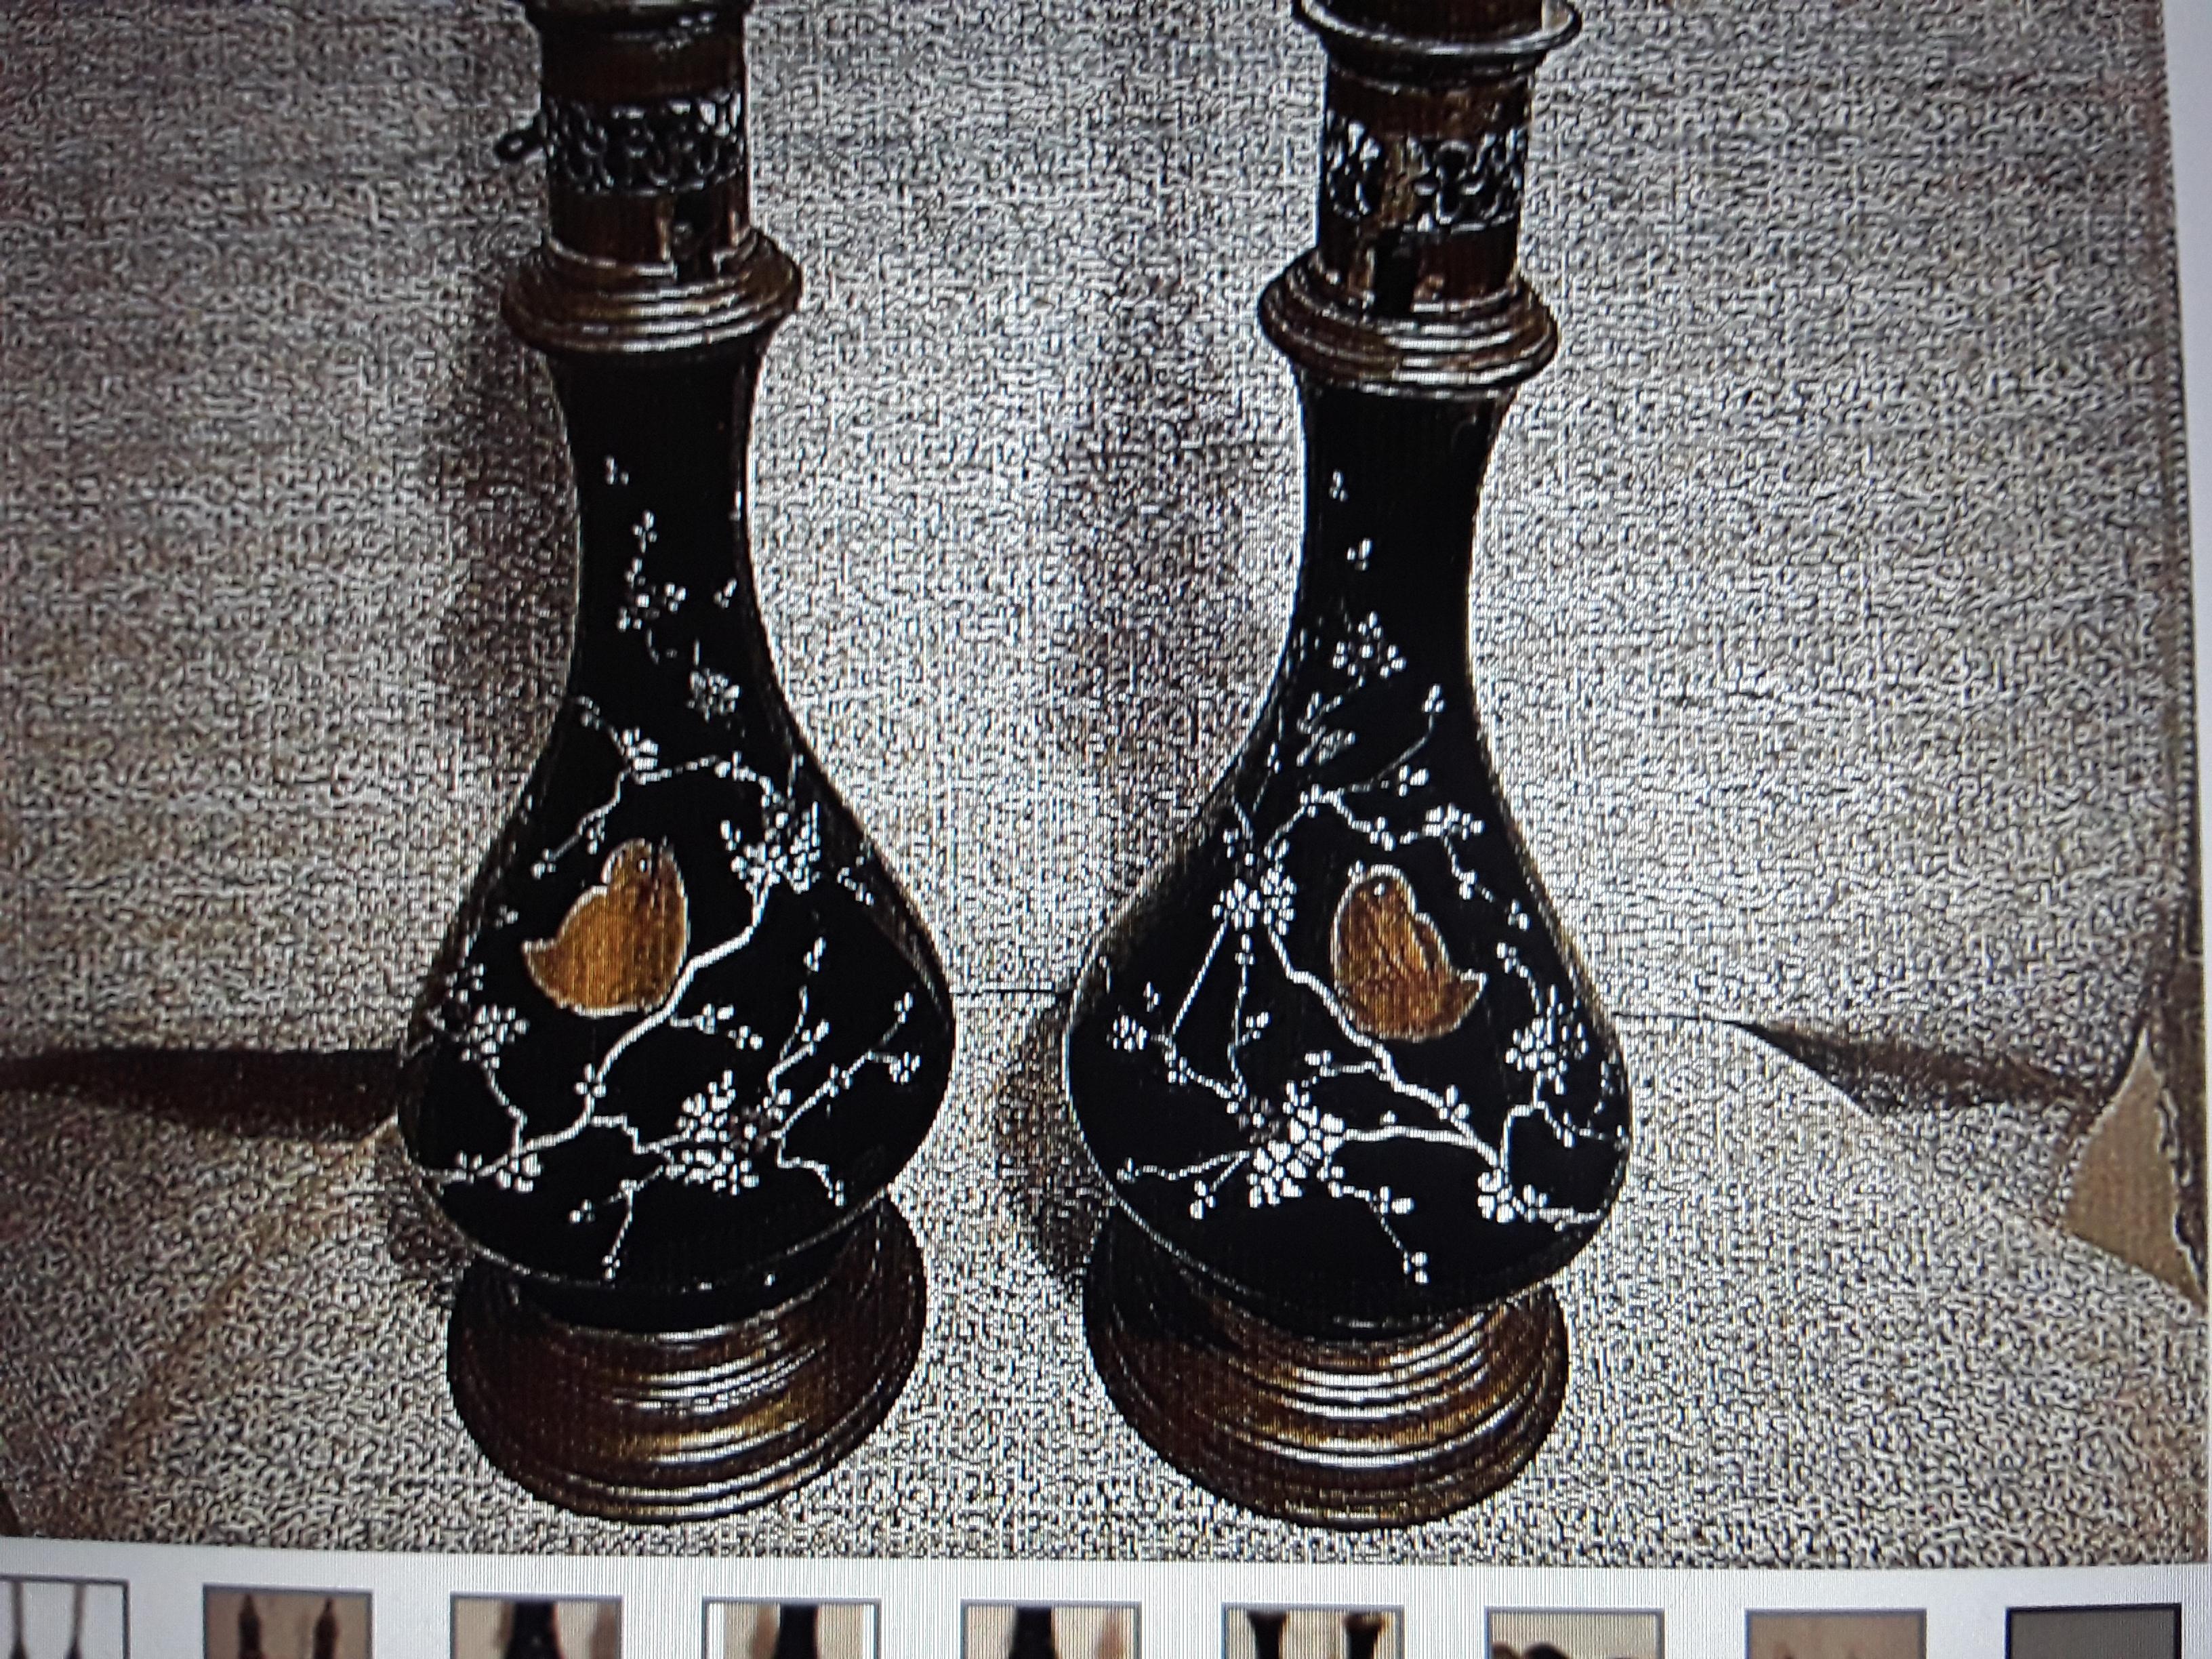 Paire de lampes à huile en verre noir opalin de la Baltique, datant de 1870, avec cheminée en verre. Décor détaillé d'oiseaux amoureux dans des cerisiers en fleurs. Ils sont magnifiques et dans leur état d'origine. Il s'agit de lampes à huile qui